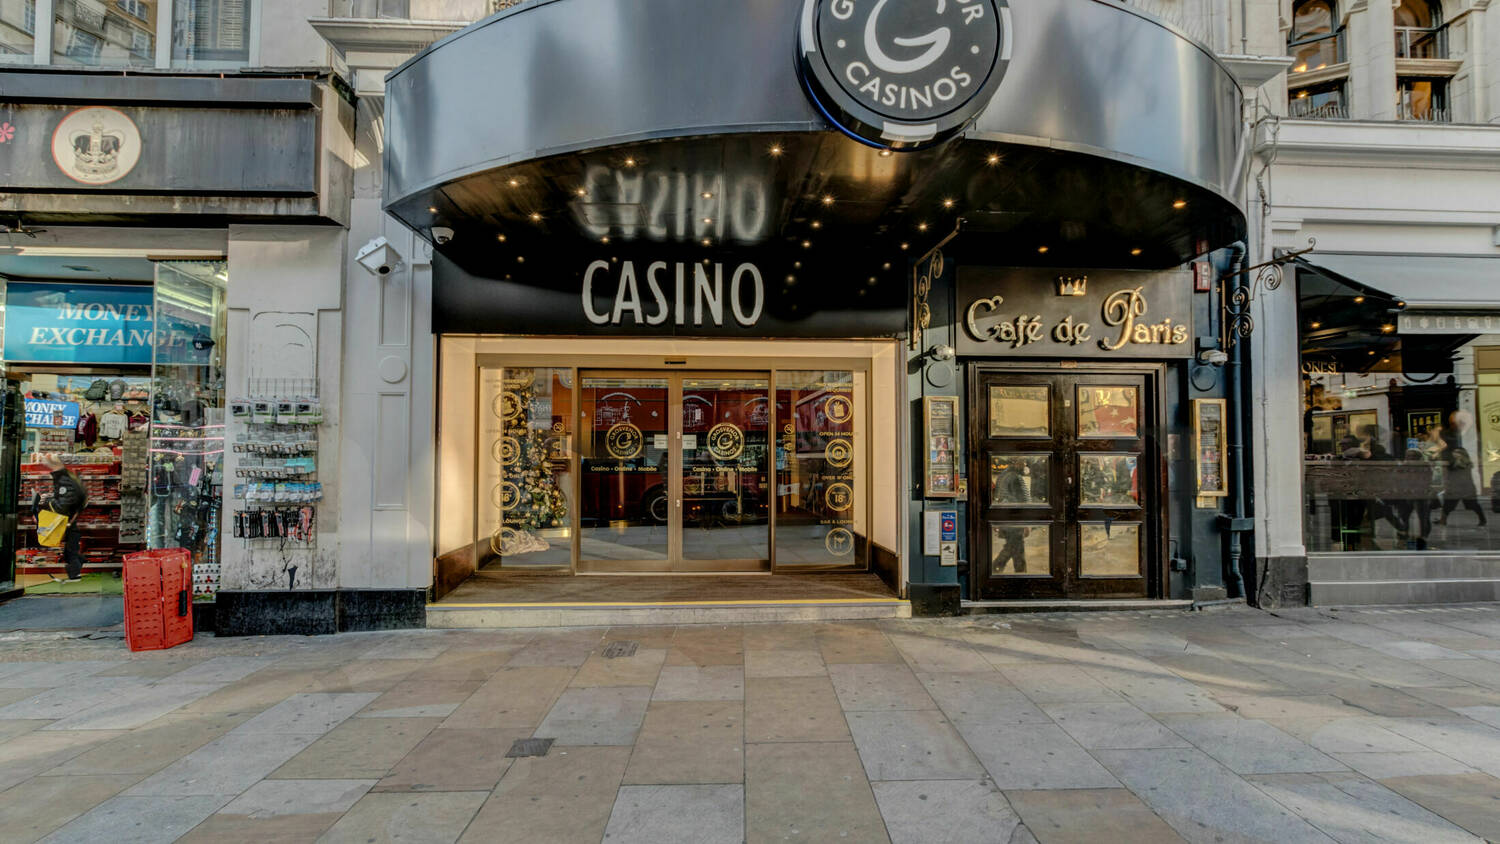 Grosvenor Casino The Rialto